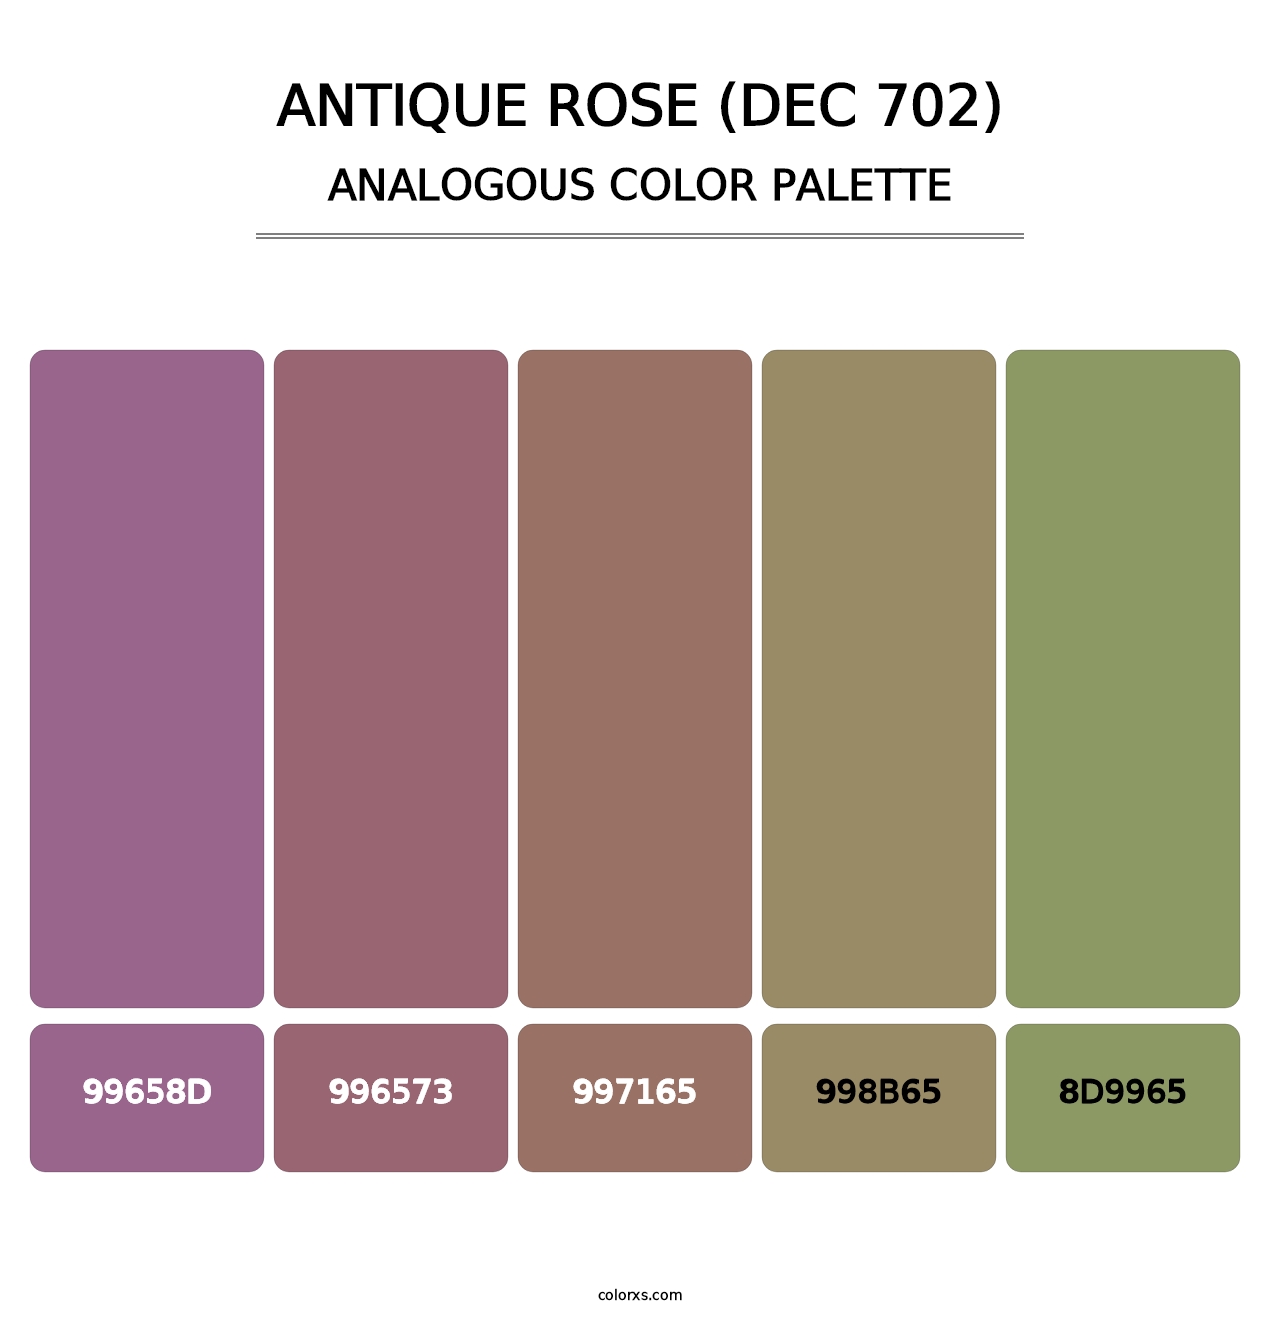 Antique Rose (DEC 702) - Analogous Color Palette